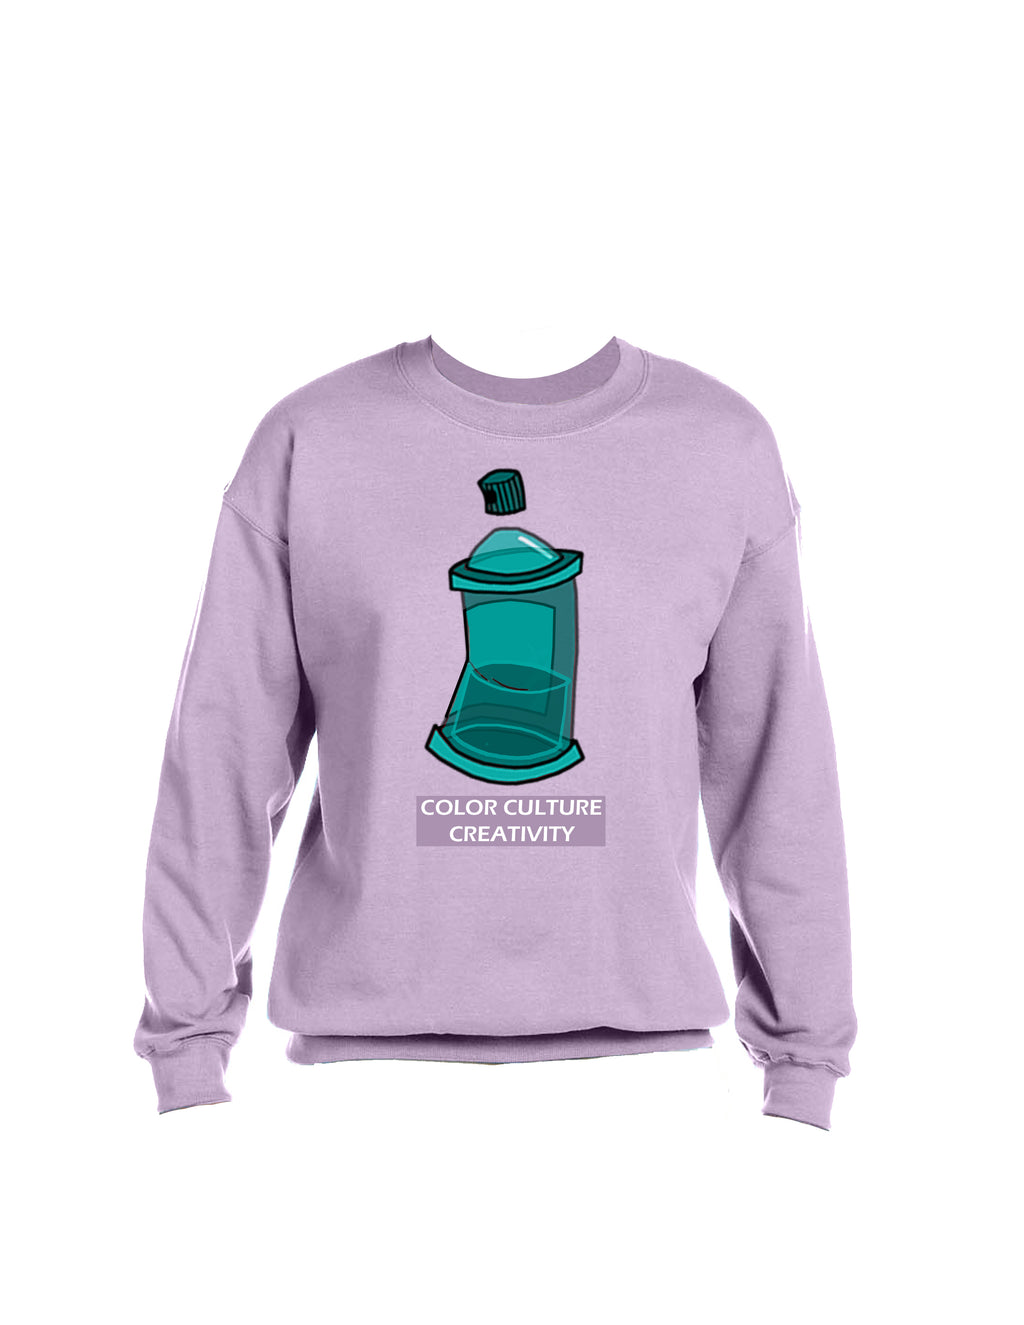 Color Culture Creativity sweatshirt